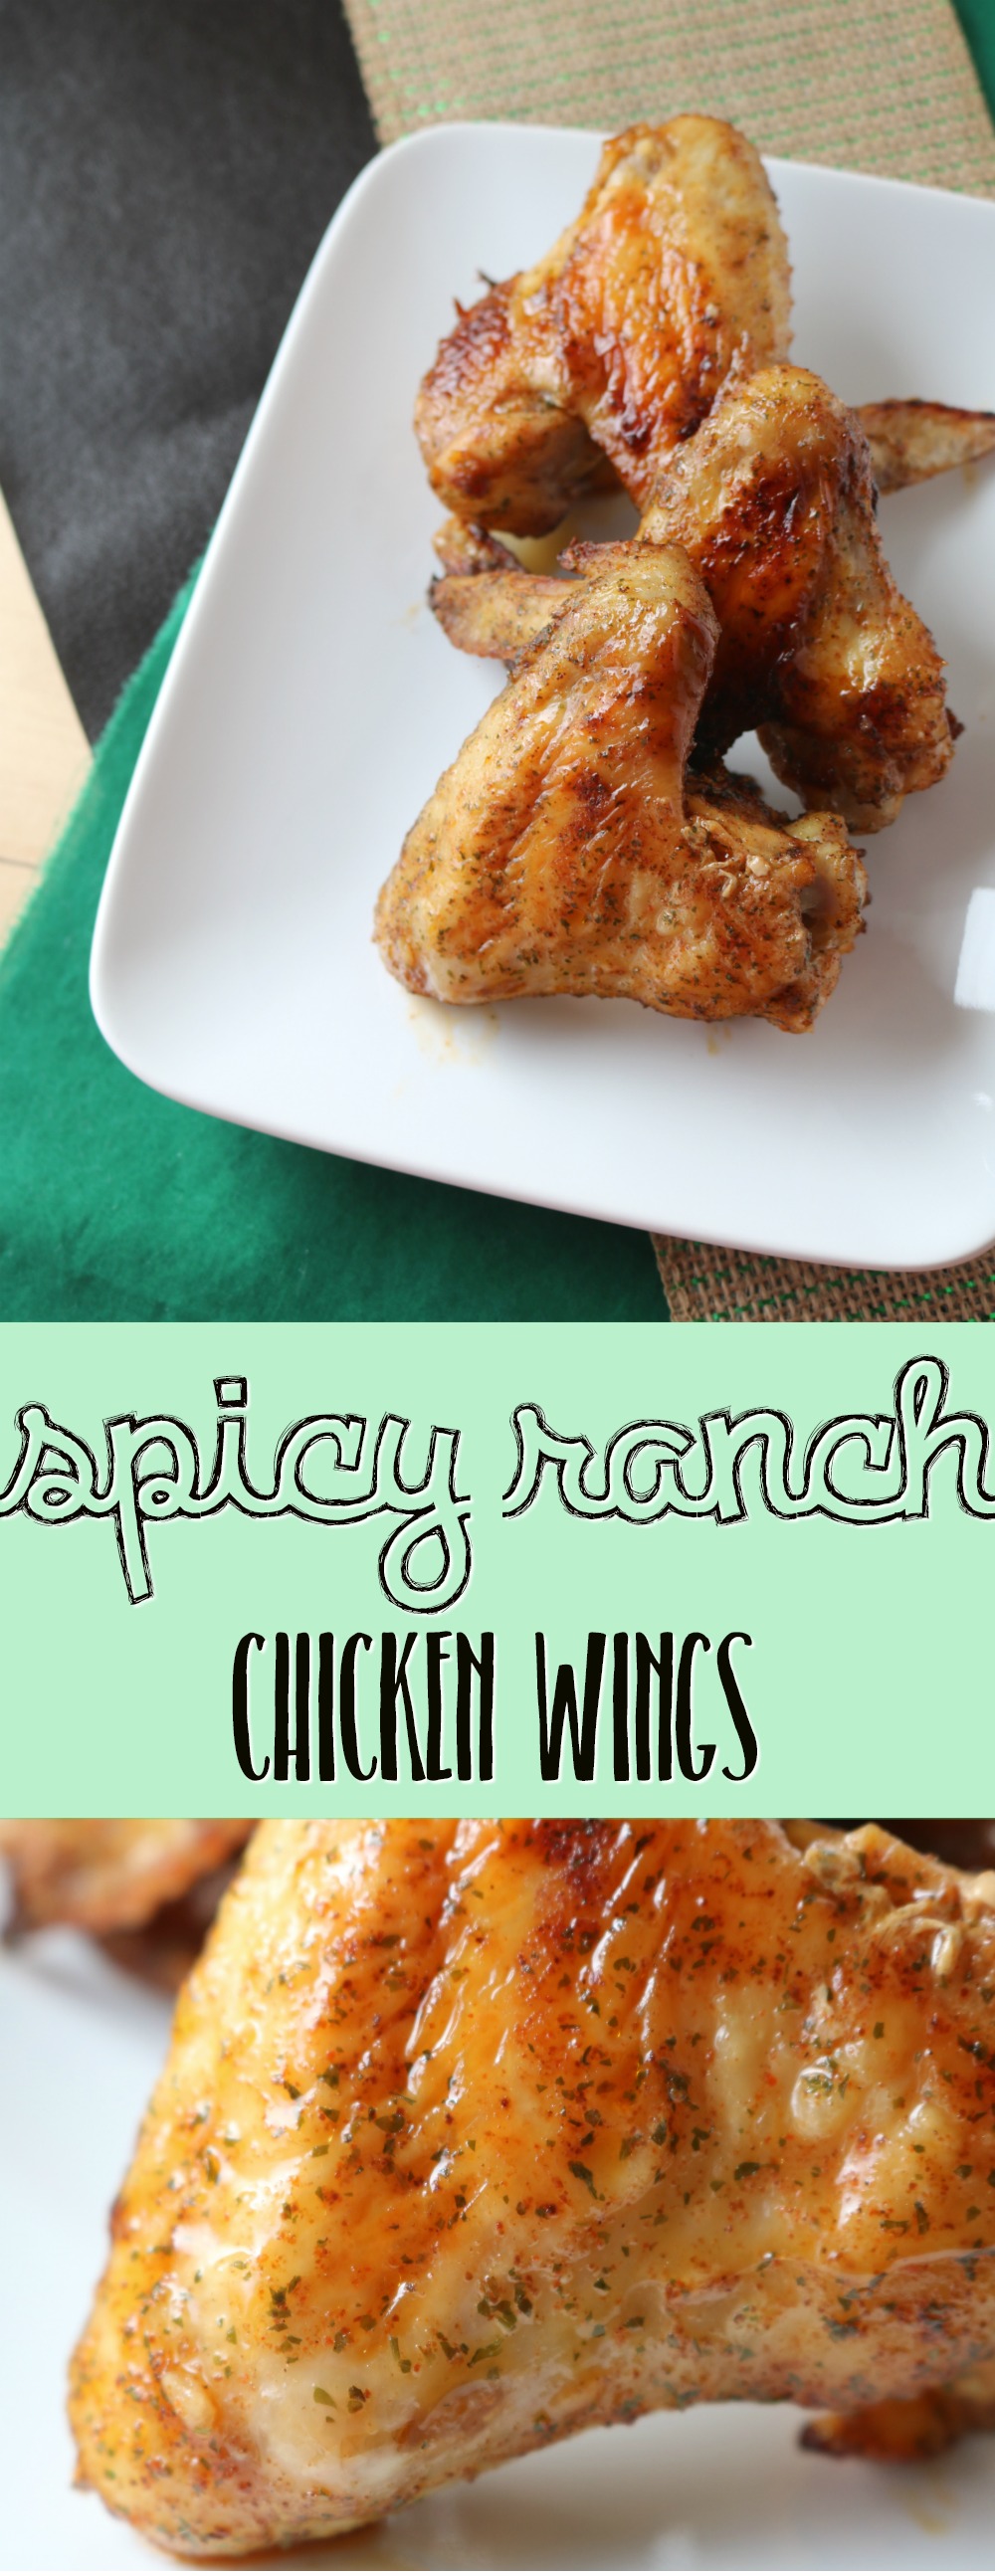 Spicy Ranch Chicken Wings | SensiblySara.com